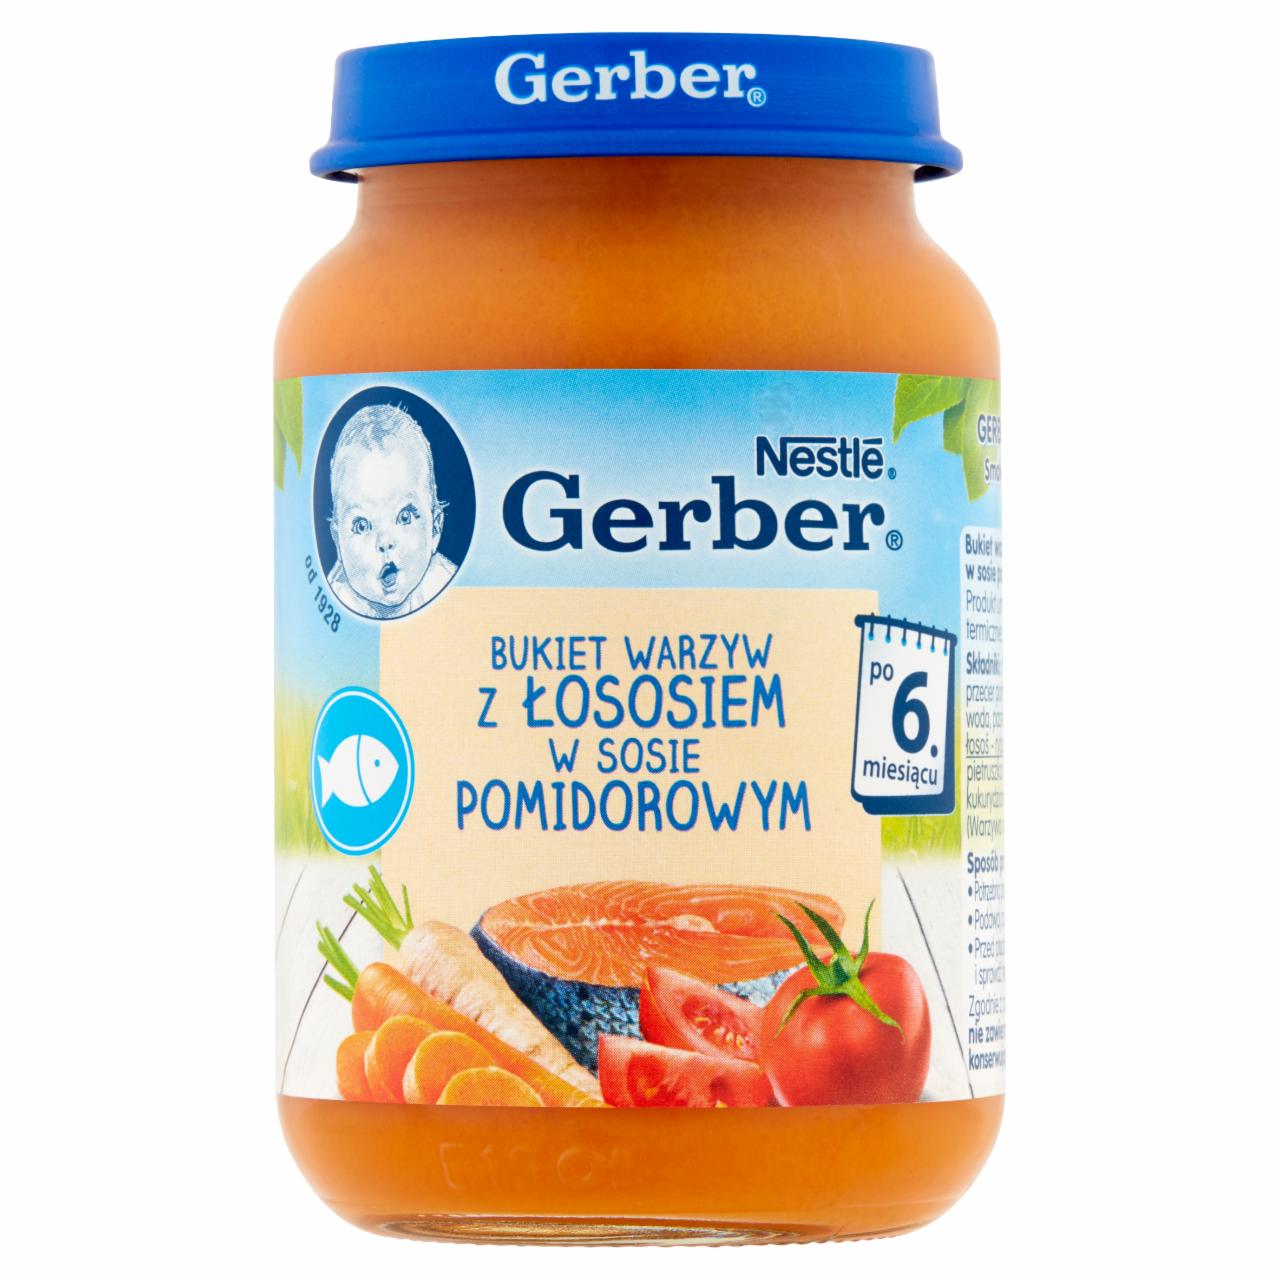 Zdjęcia - Gerber Bukiet warzyw z łososiem w sosie pomidorowym dla niemowląt po 6. miesiącu 190 g